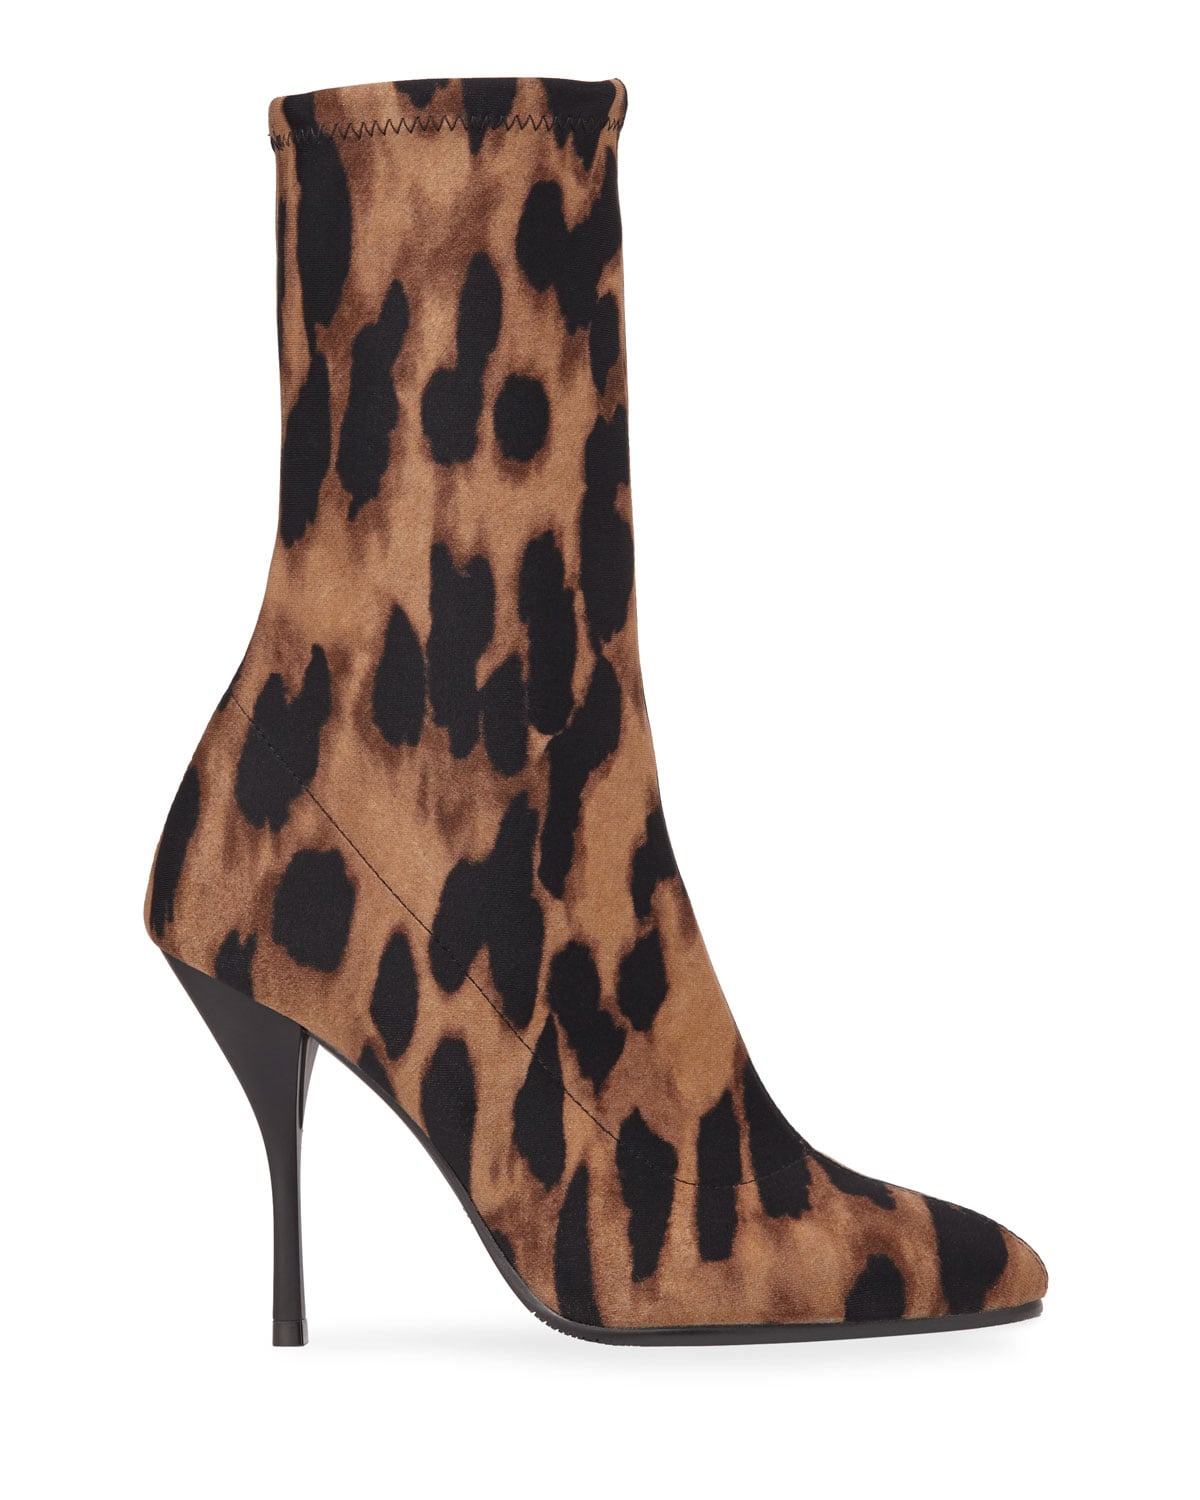 leopard print sock booties